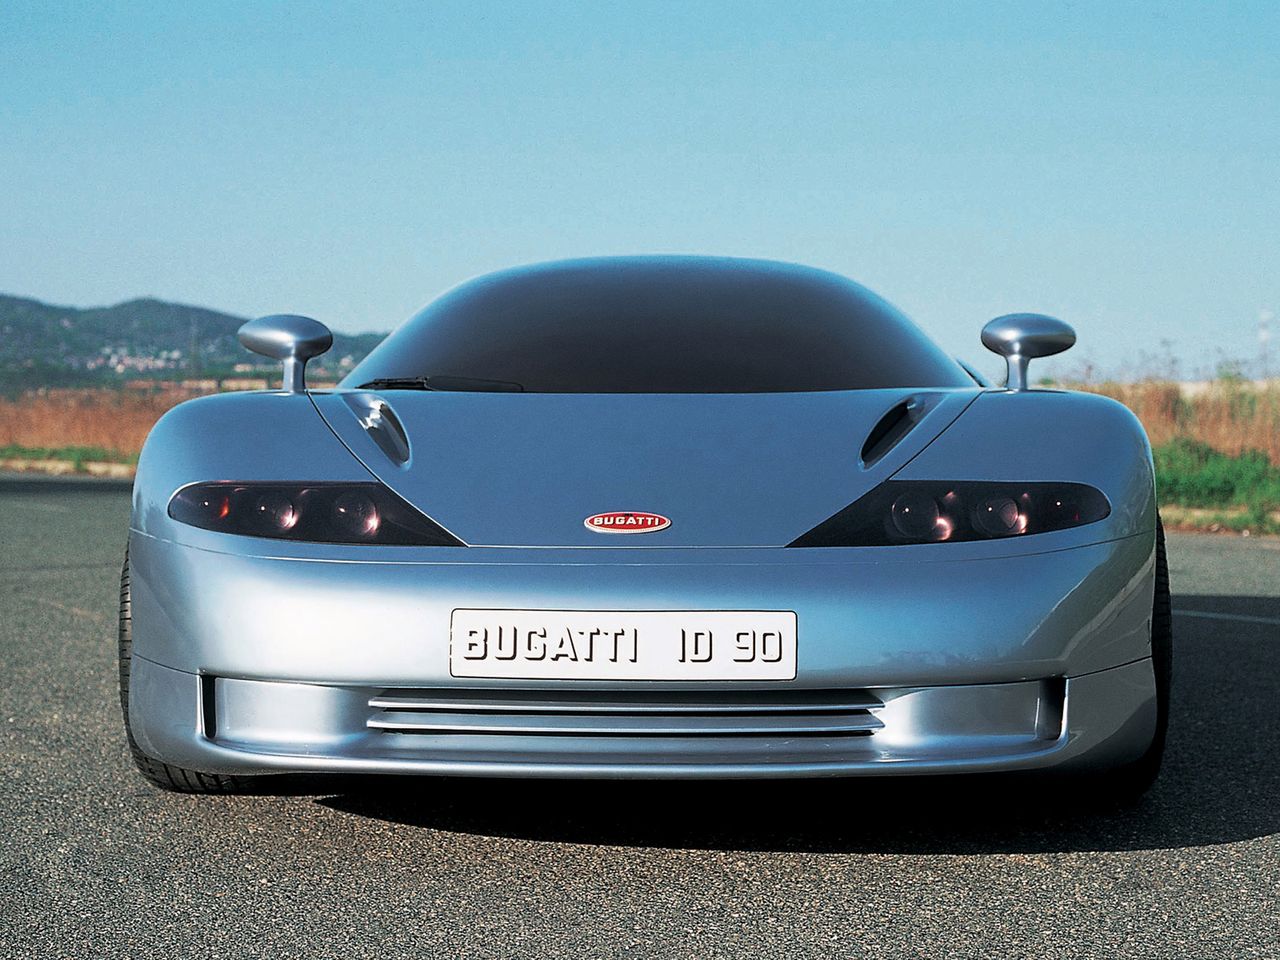 1990 Bugatti ID 90